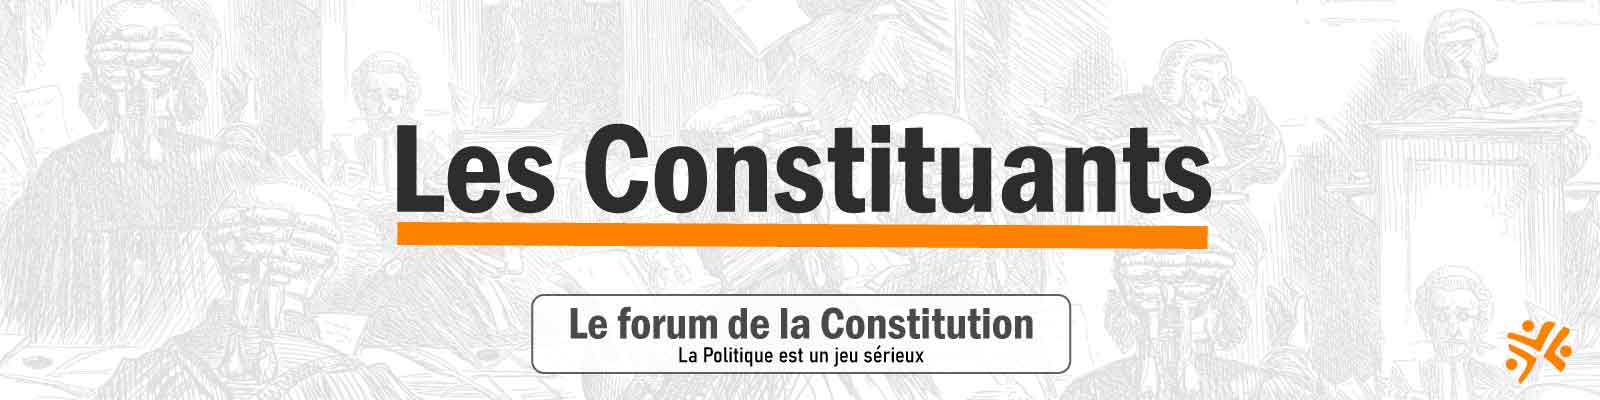 LA CONSTITUTION DE LA RÉPUBLIQUE CITOYENNE